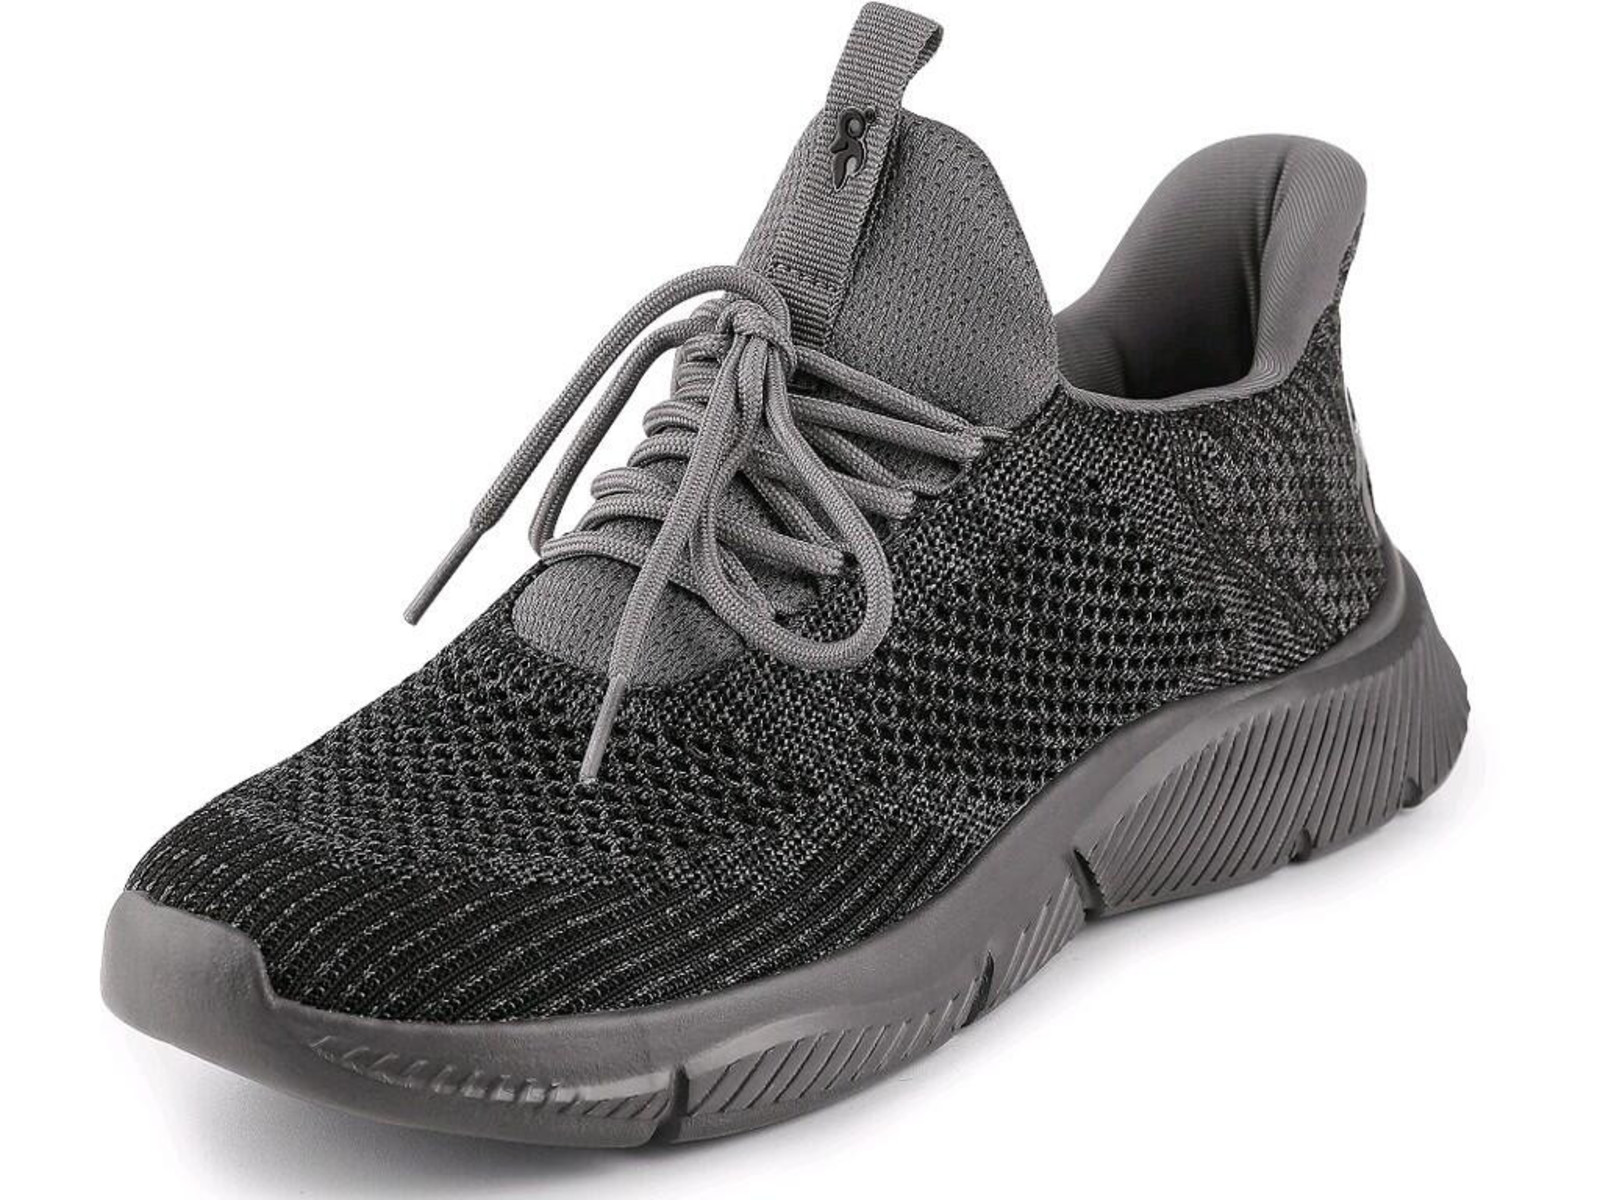 Voľnočasová obuv CXS Island Barbados - veľkosť: 38, farba: sivá/čierna